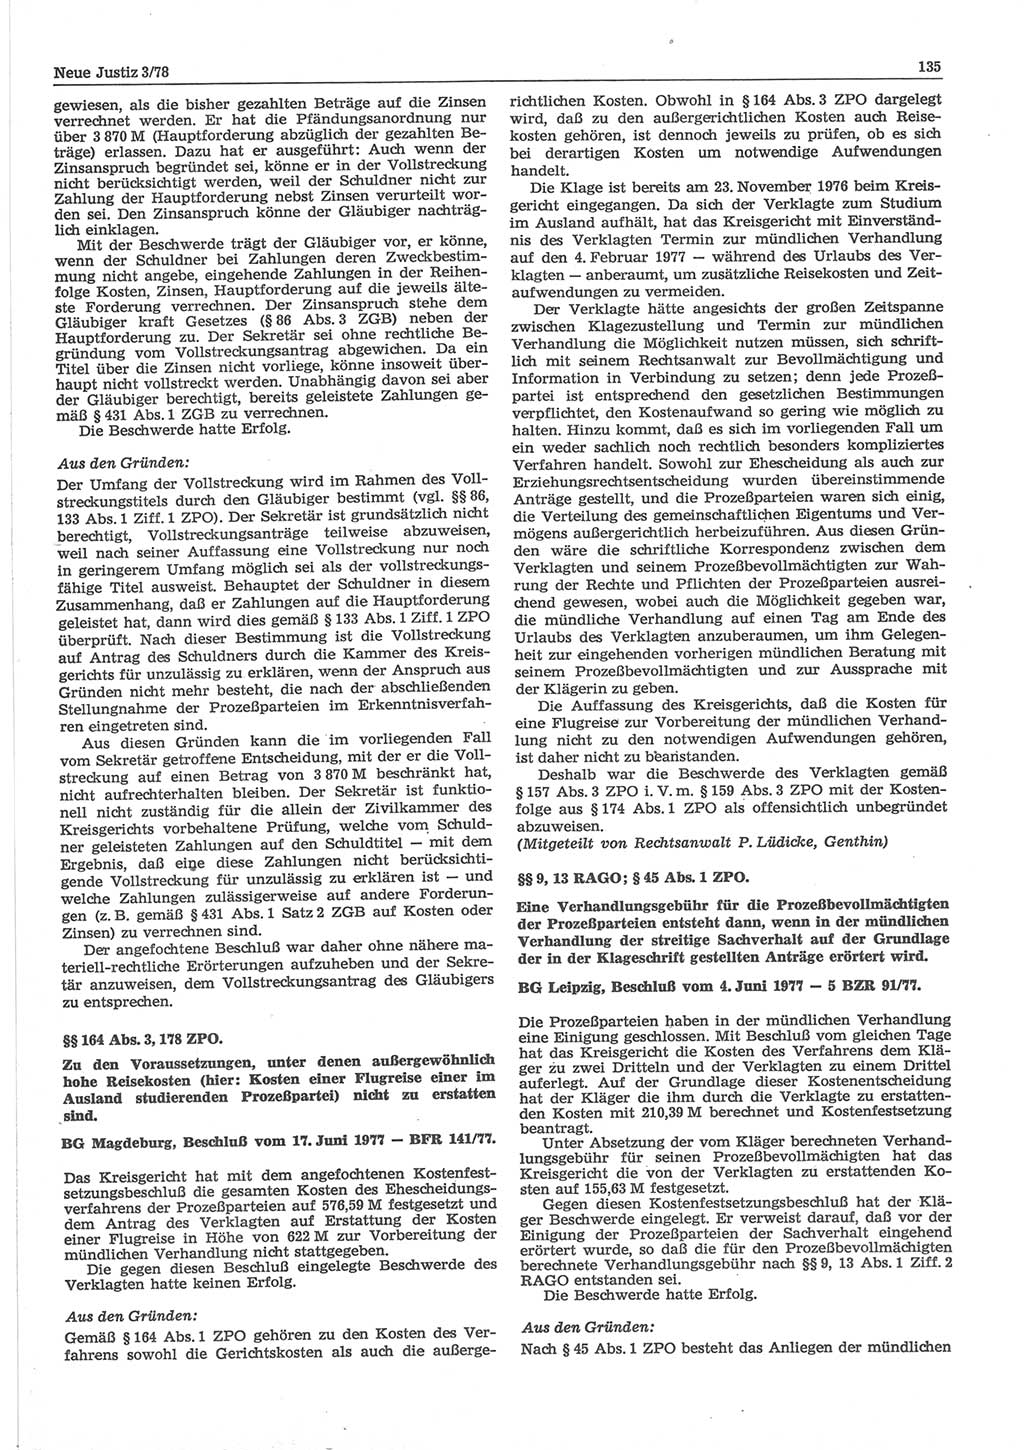 Neue Justiz (NJ), Zeitschrift für sozialistisches Recht und Gesetzlichkeit [Deutsche Demokratische Republik (DDR)], 32. Jahrgang 1978, Seite 135 (NJ DDR 1978, S. 135)